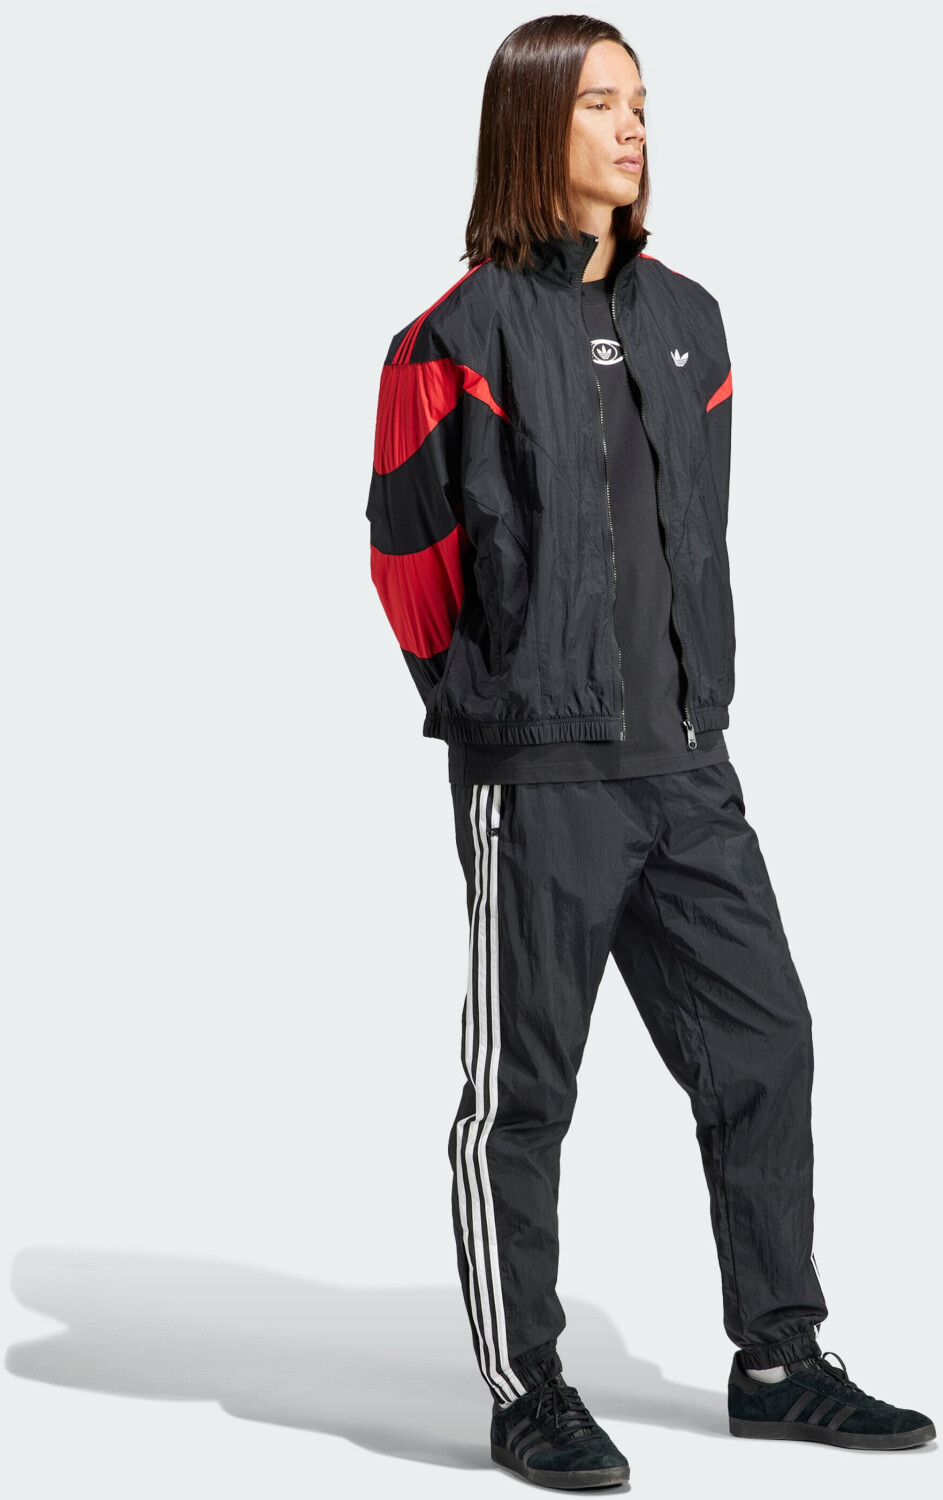 Adidas Man Rekive Woven Originals 54,00 Preisvergleich ab (HZ0729) Jacket black/better € scarlet | bei